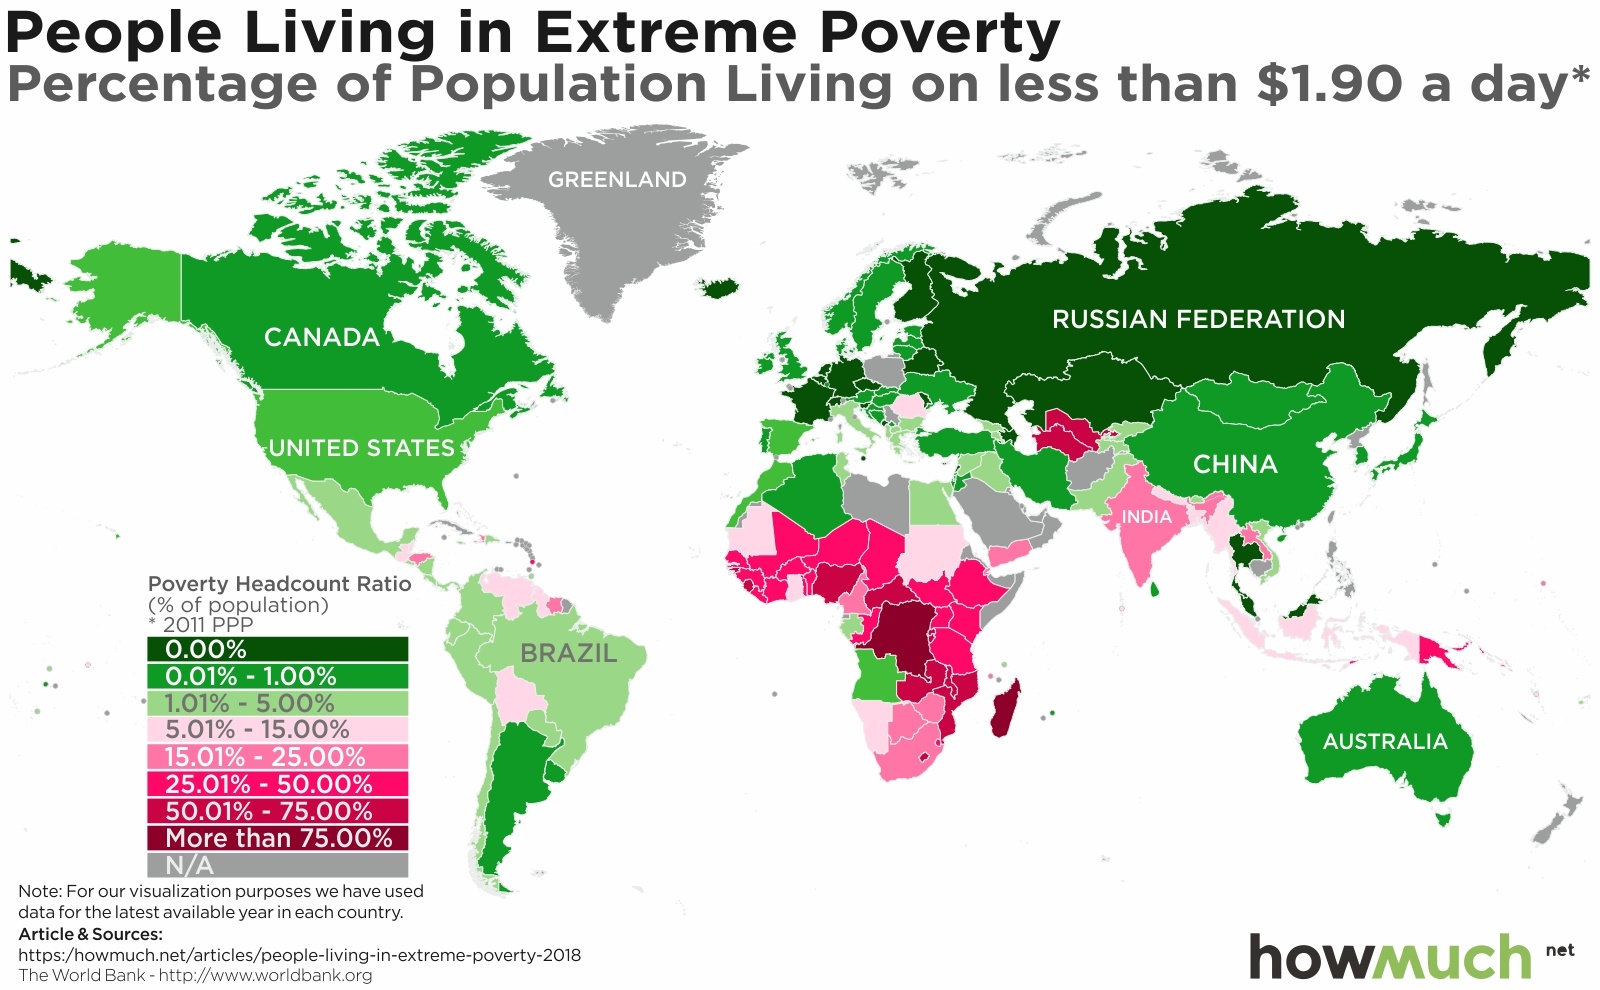 Визуализация уровня нищеты населения стран мира от ресурса howmuch.net.